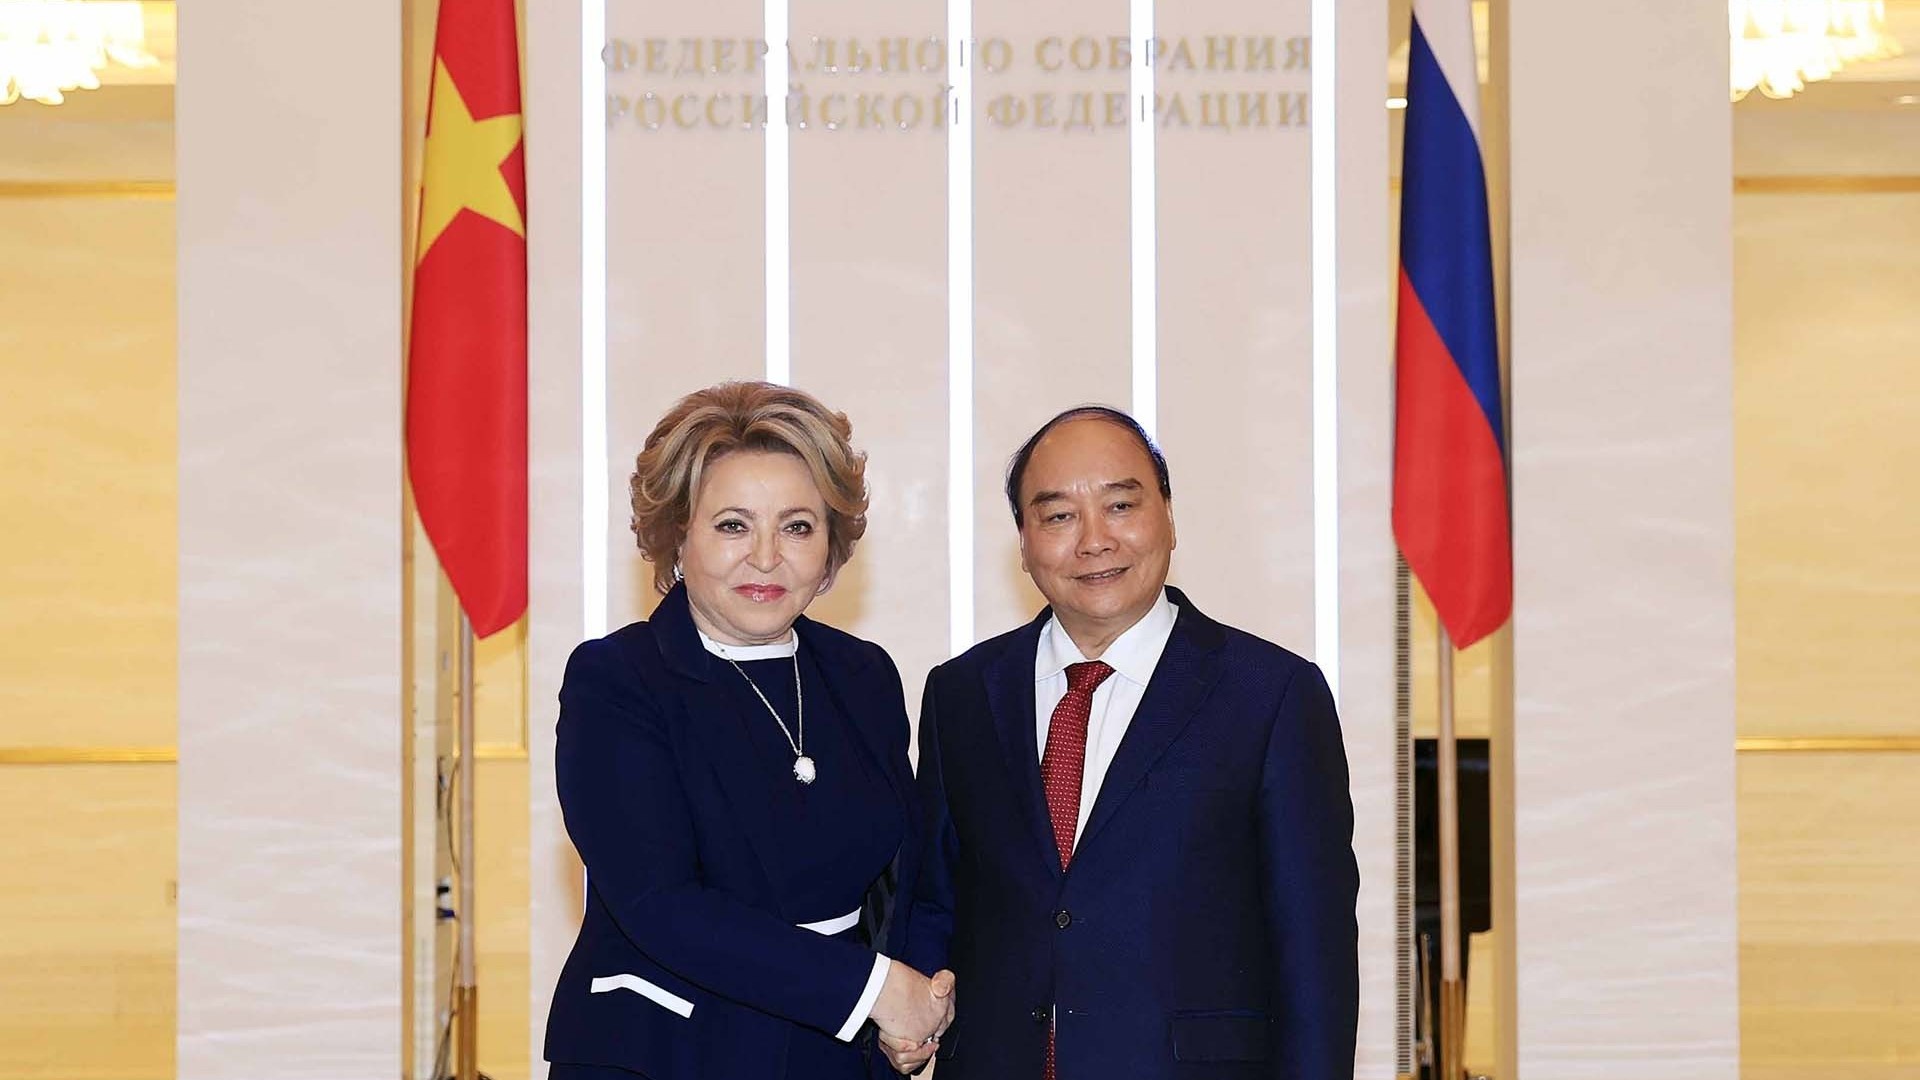 Chủ tịch nước Nguyễn Xuân Phúc hội kiến Chủ tịch Hội đồng Liên bang Nga